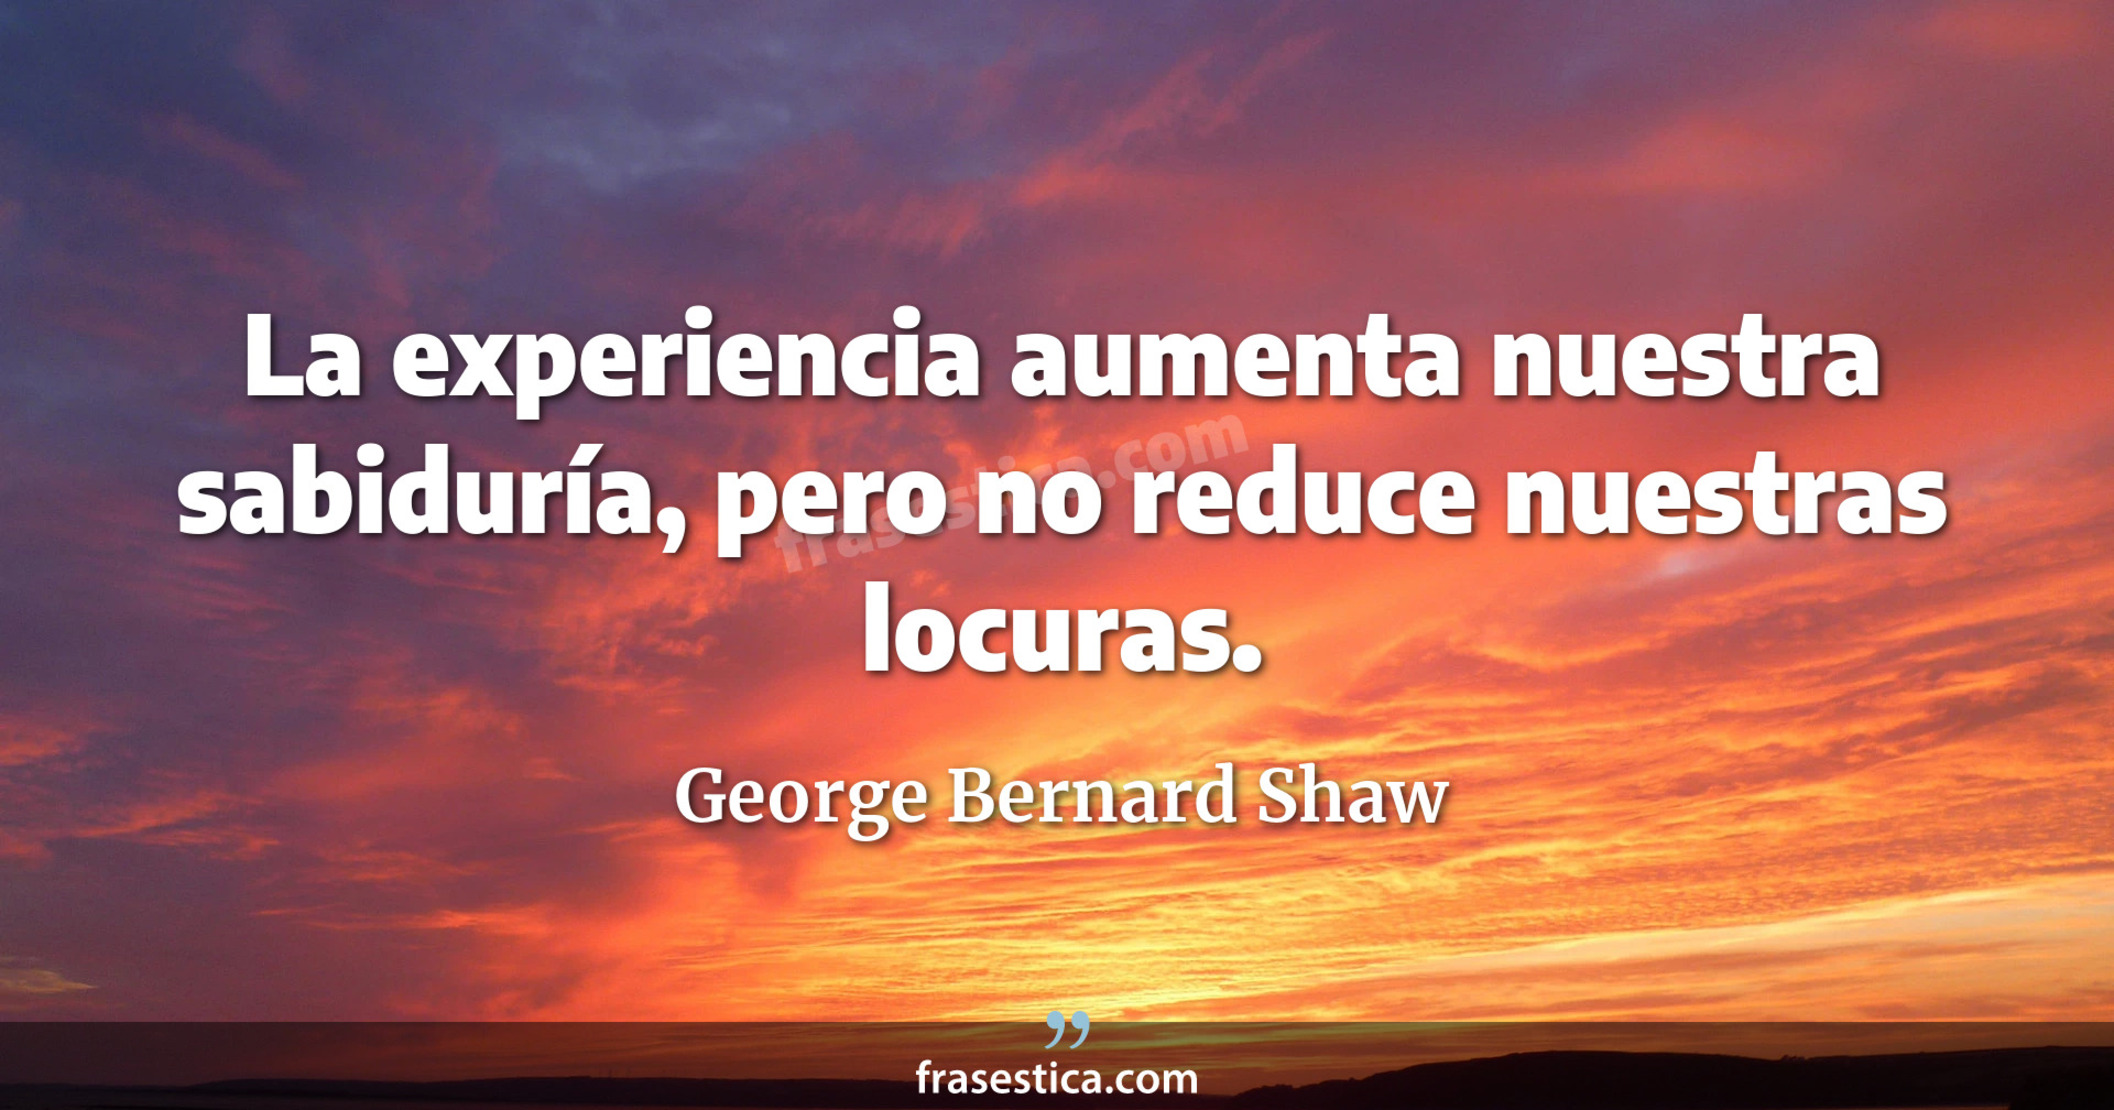 La experiencia aumenta nuestra sabiduría, pero no reduce nuestras locuras. - George Bernard Shaw